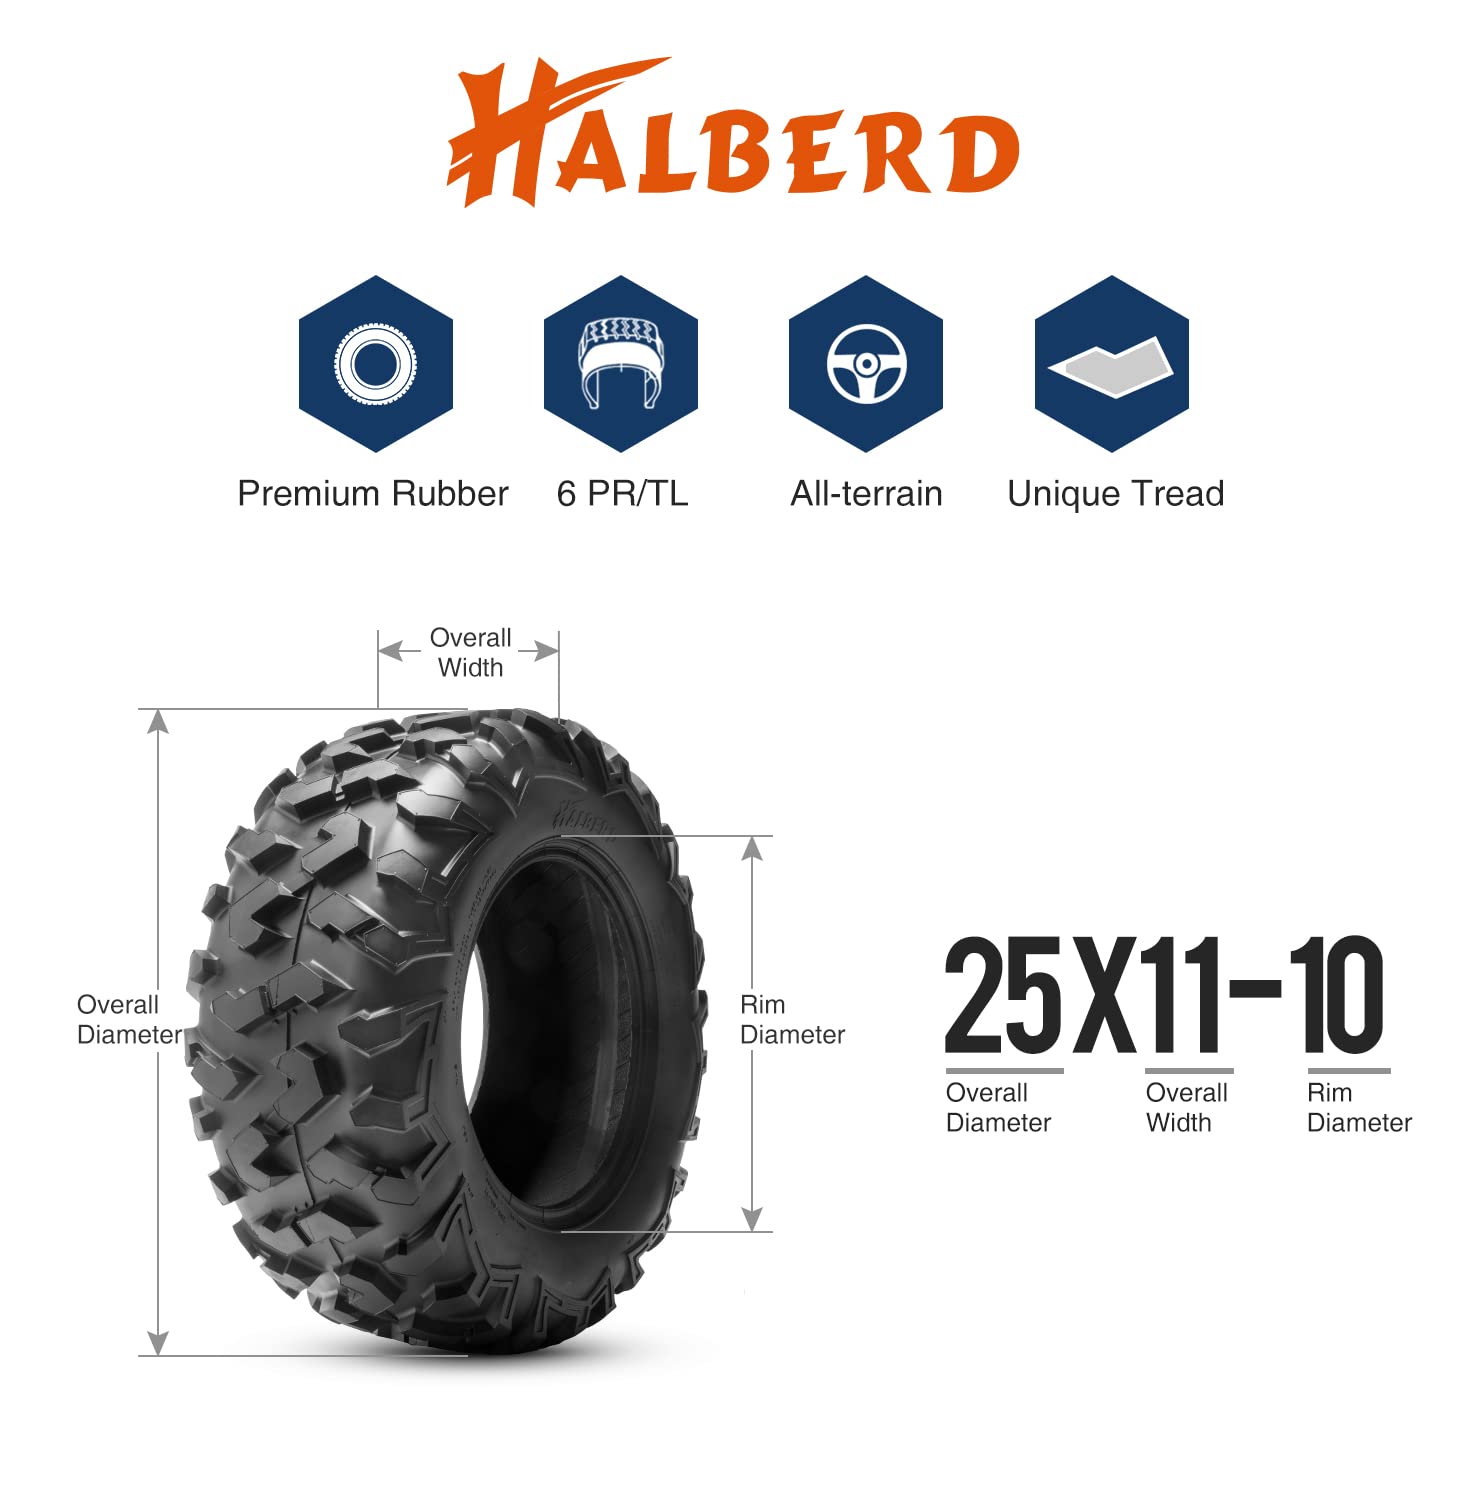 Halberd HU01 25x11-10 ATV Tires Set of 2